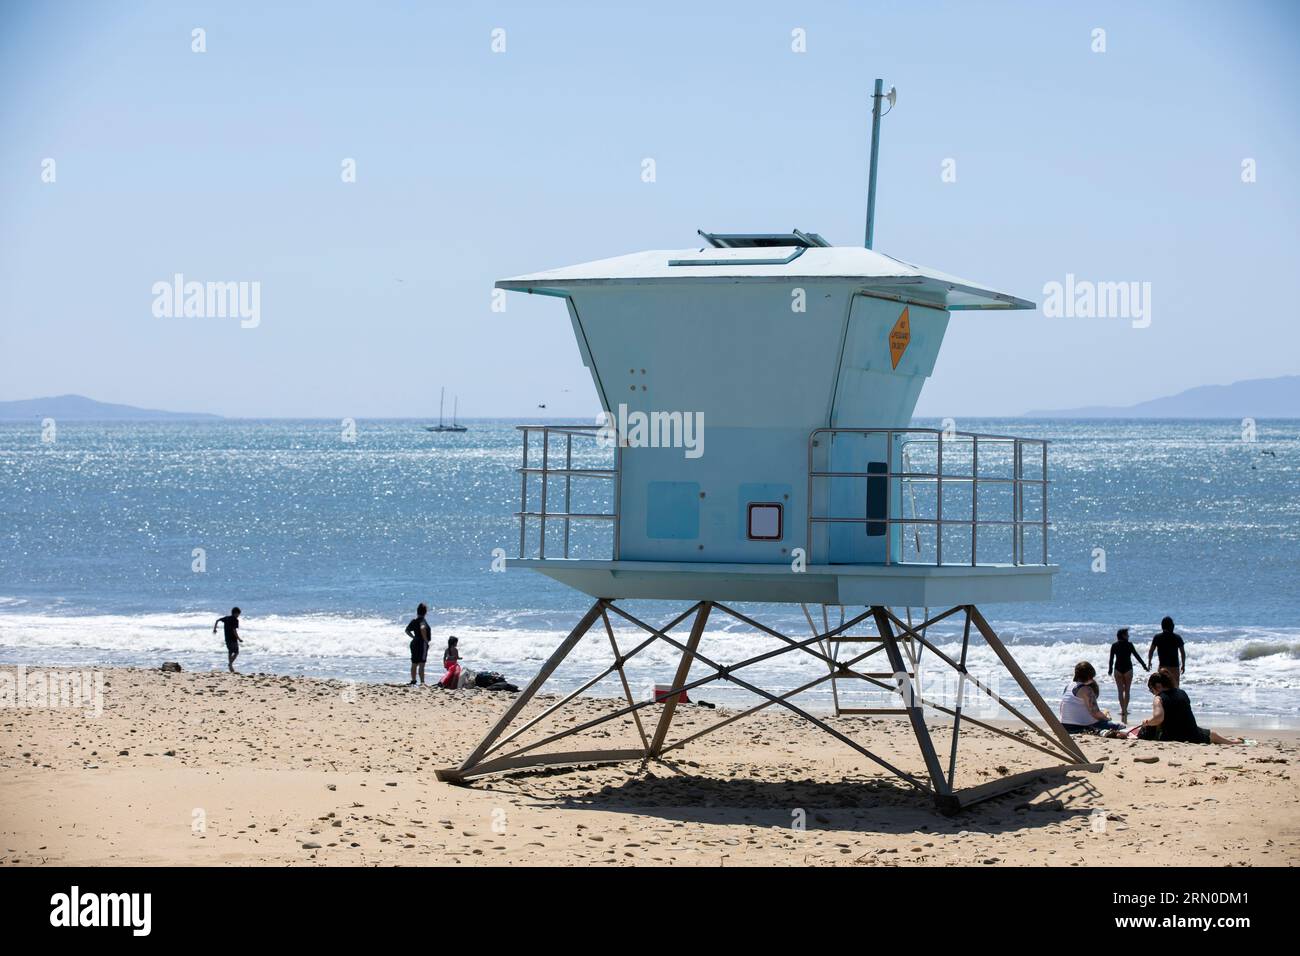 Il sole del pomeriggio splende su una guardia costiera pubblica a Ventura Beach, nel centro di Ventura, California, Stati Uniti. Foto Stock